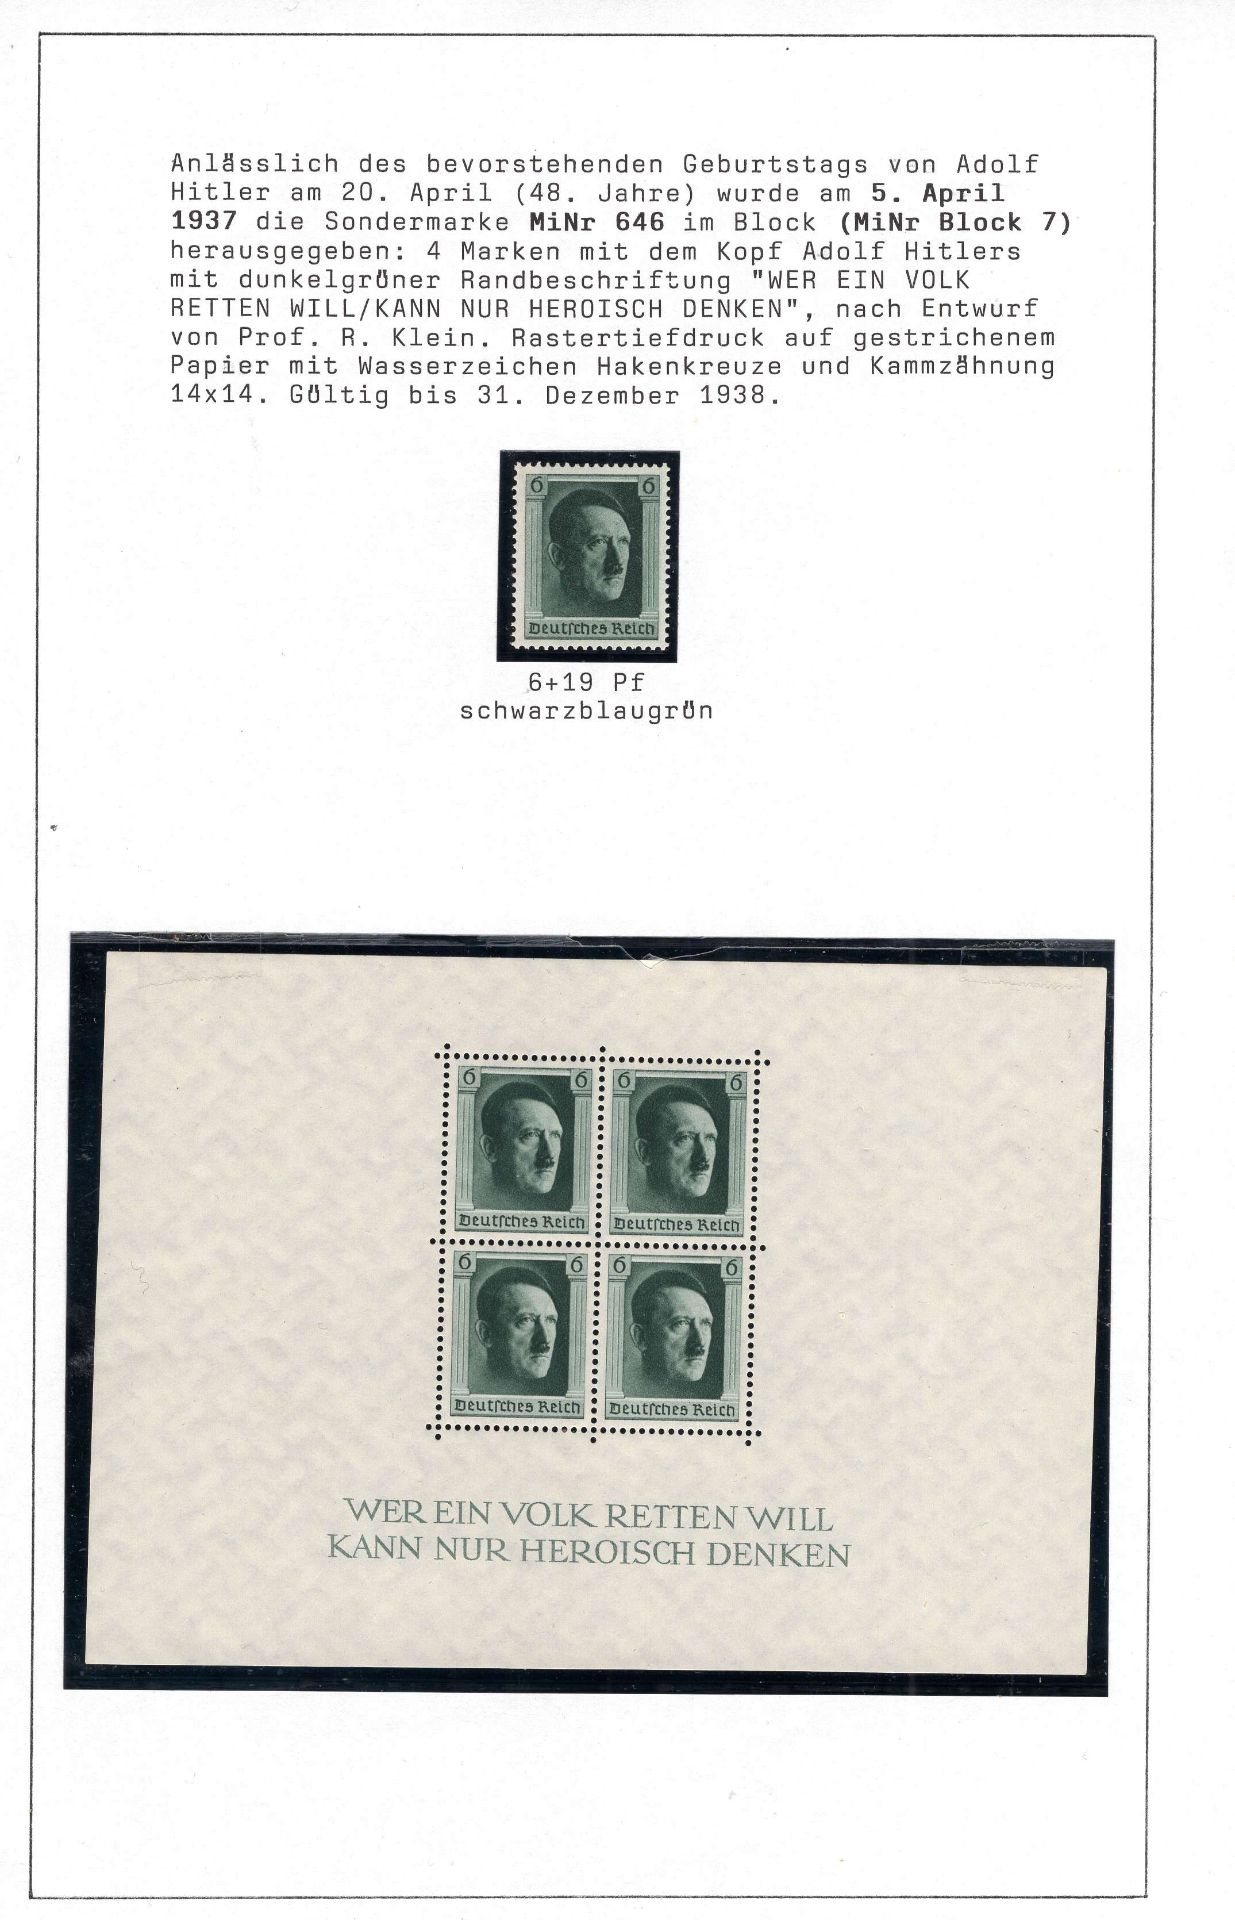 Deutsches Reich, Blockausgabe 48. Geburtstag von Adolf Hitler, Einzelmarke und Block 7. Tadellose